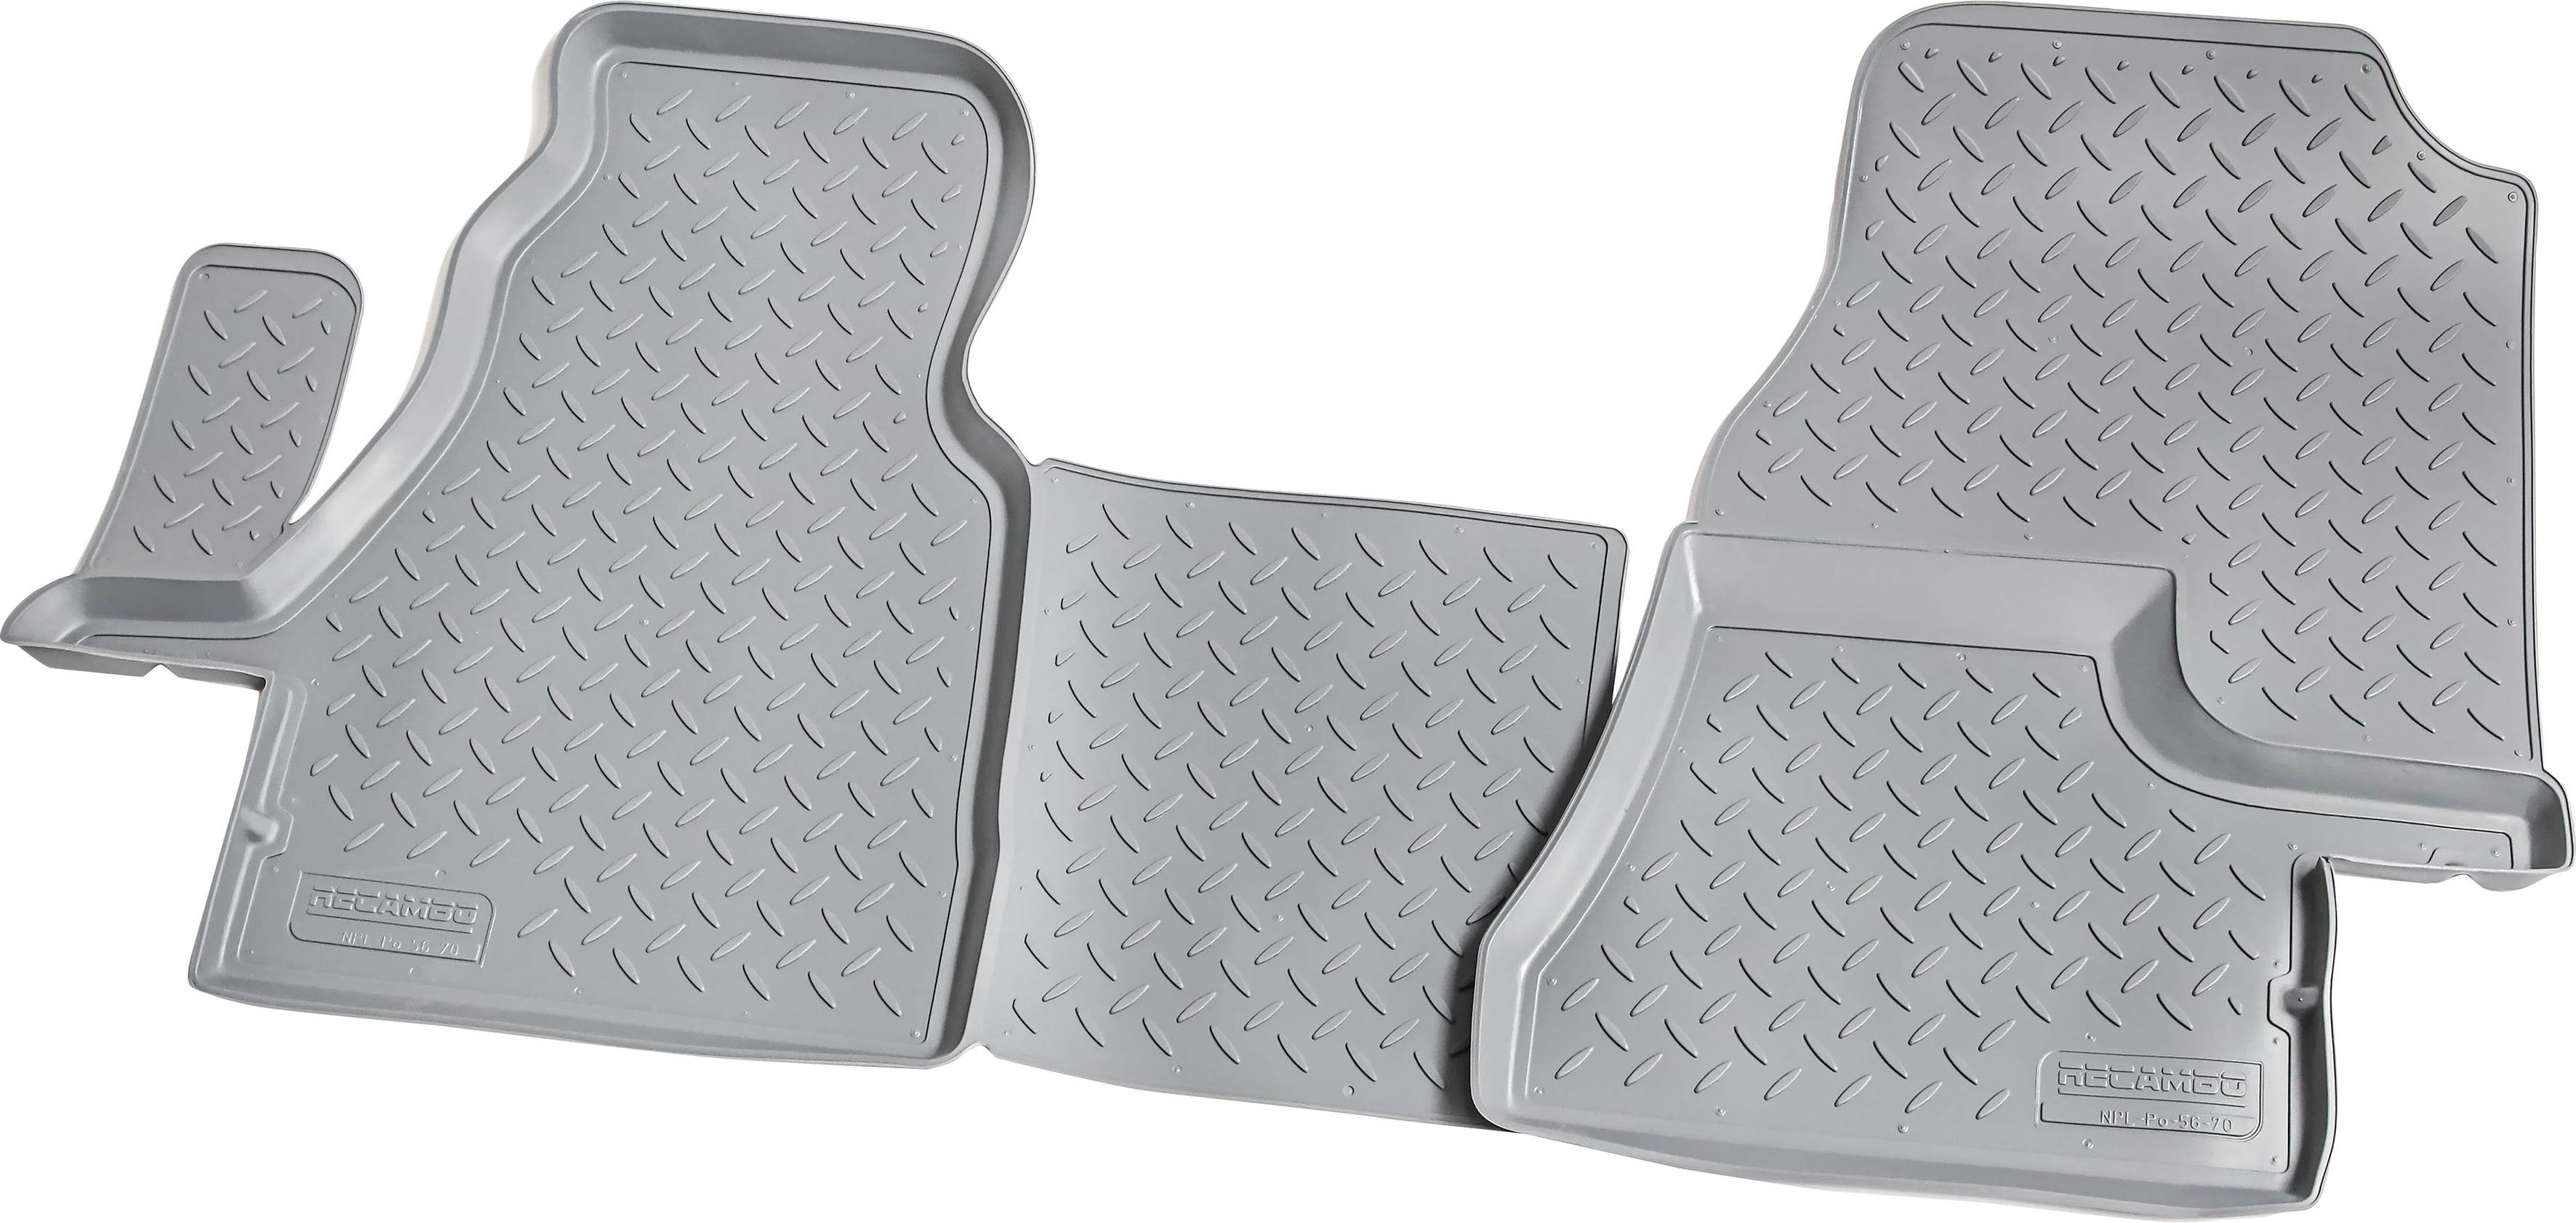 RECAMBO Passform-Fußmatten CustomComforts (4 St), für Mercedes-Benz  Sprinter, W901-W905 2000 - 2006, perfekte Passform, Pflegeleicht,  strapazierfähig, reißfest und geruchsneutral